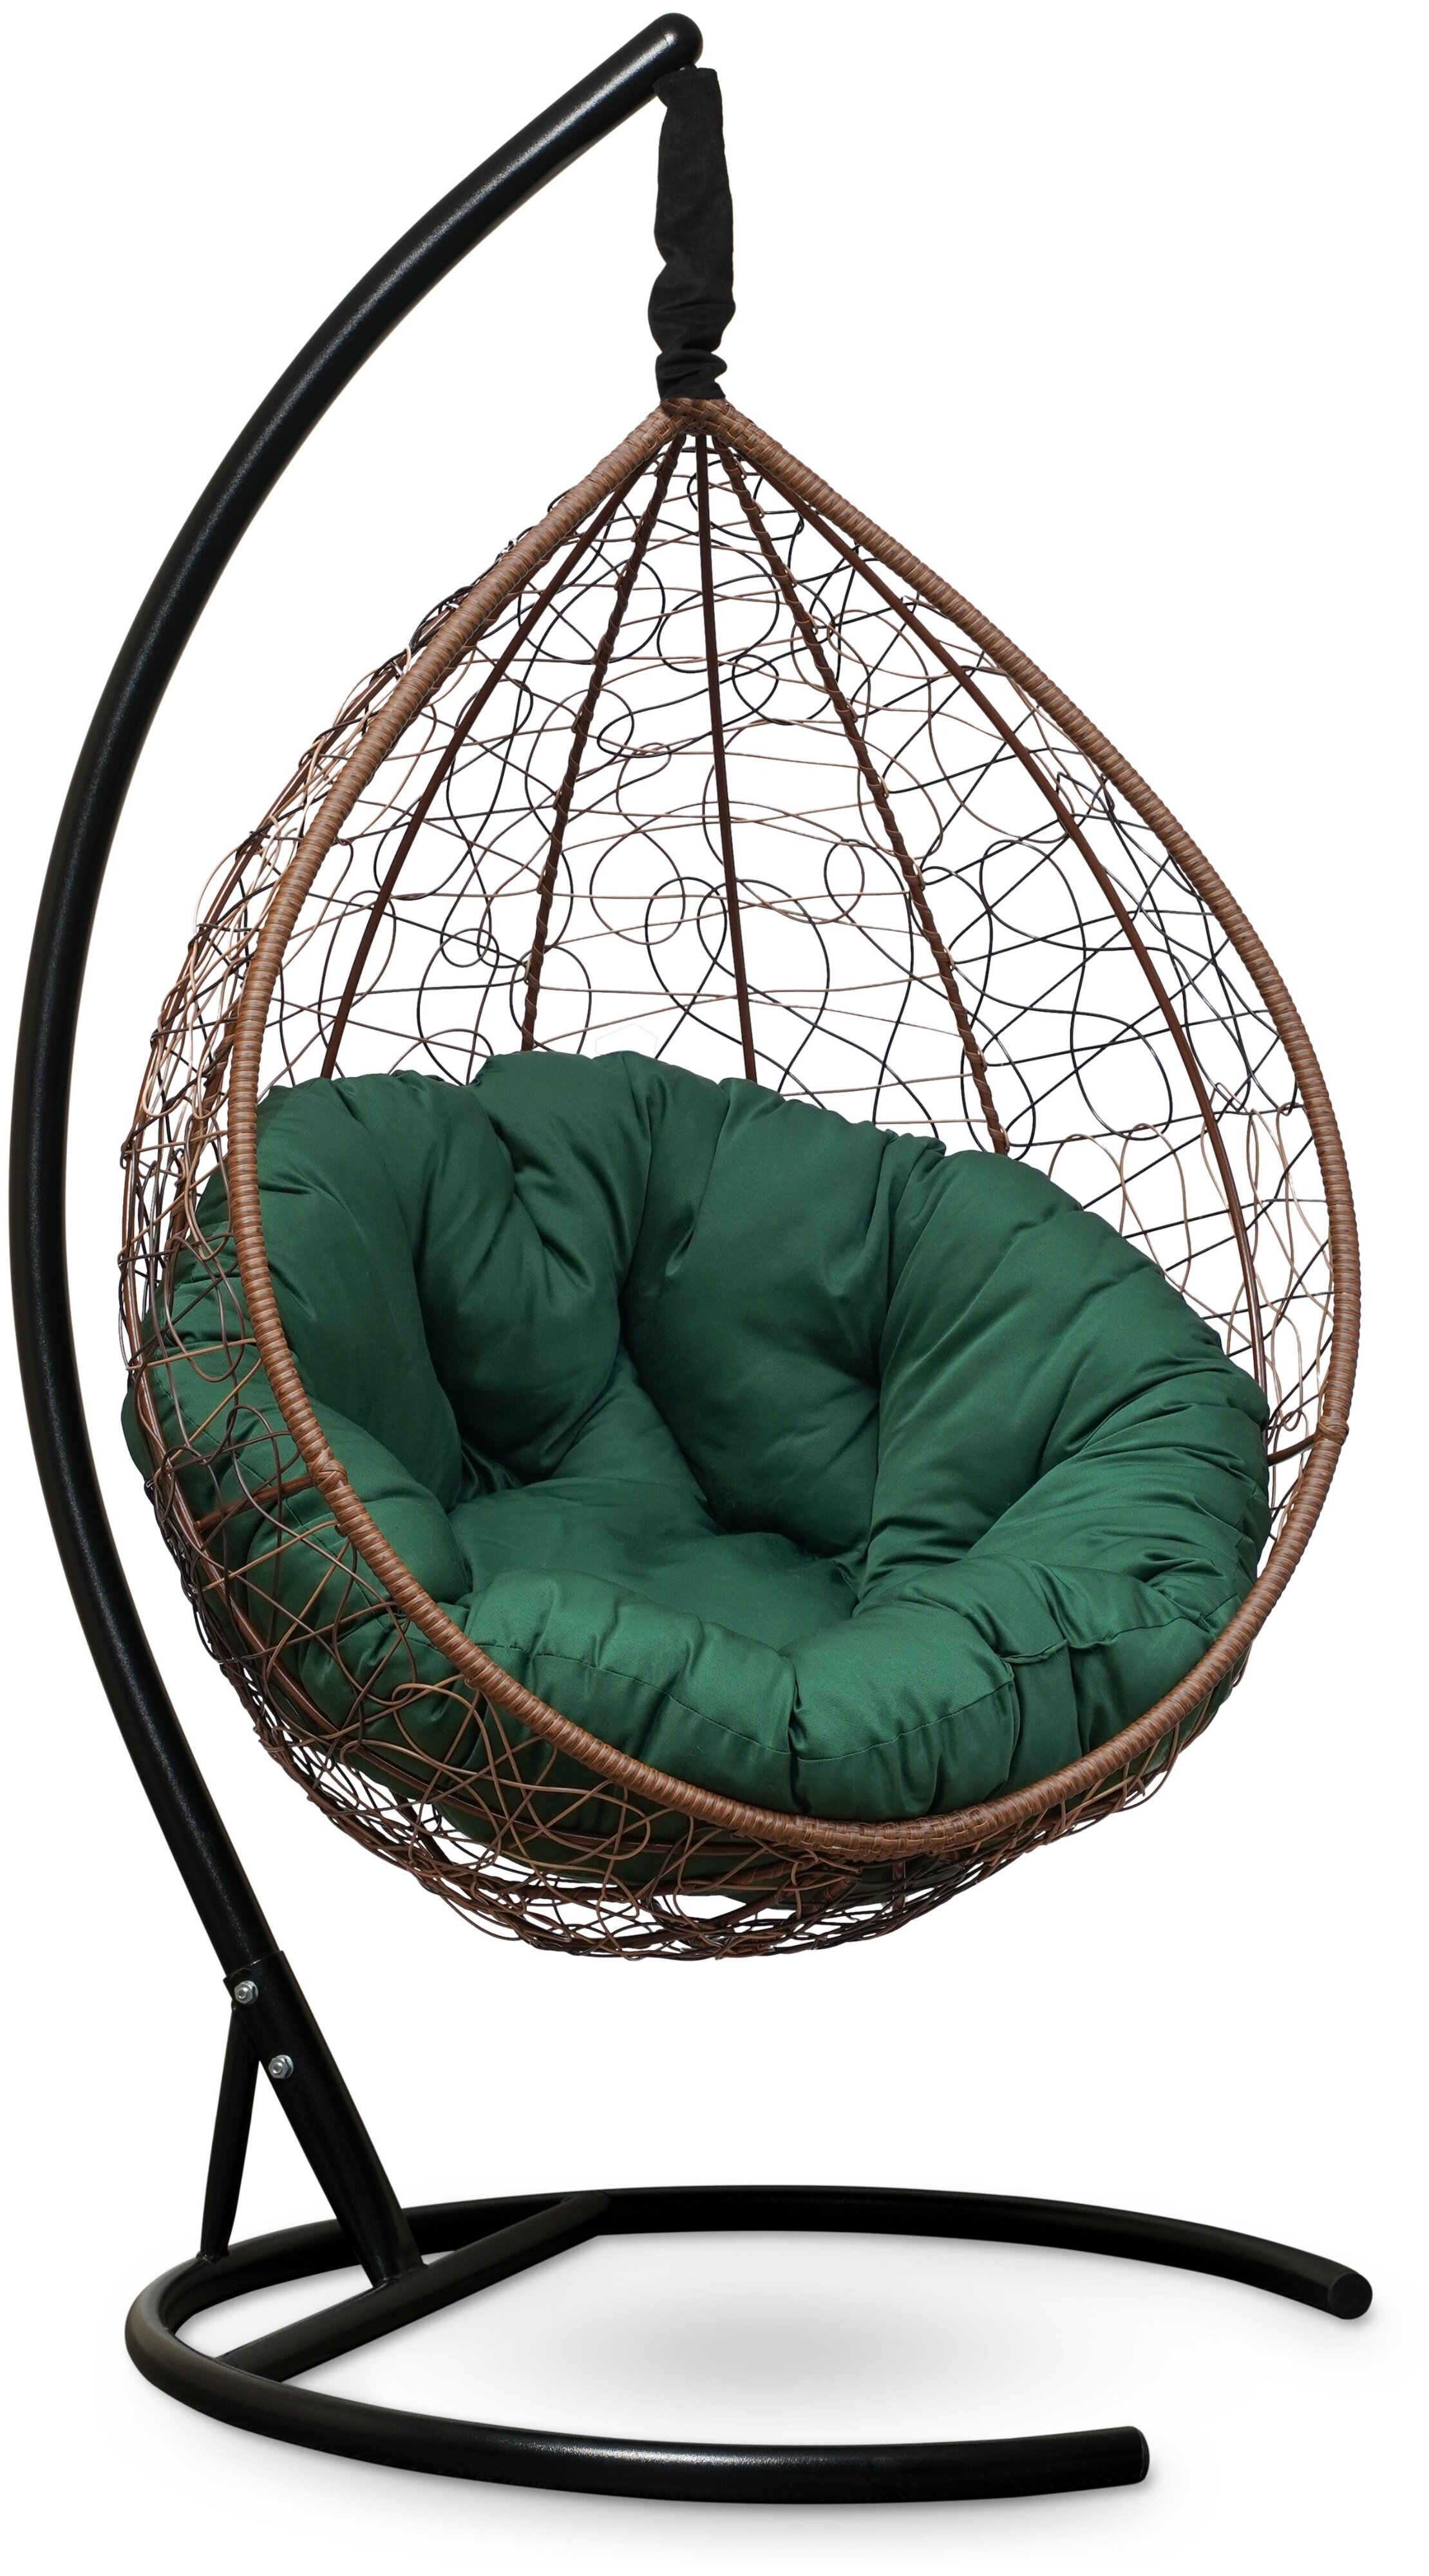 Laura Outdoor Sevilla Verde, 105х195 см, до 130 кг - высота кресла: 195 см